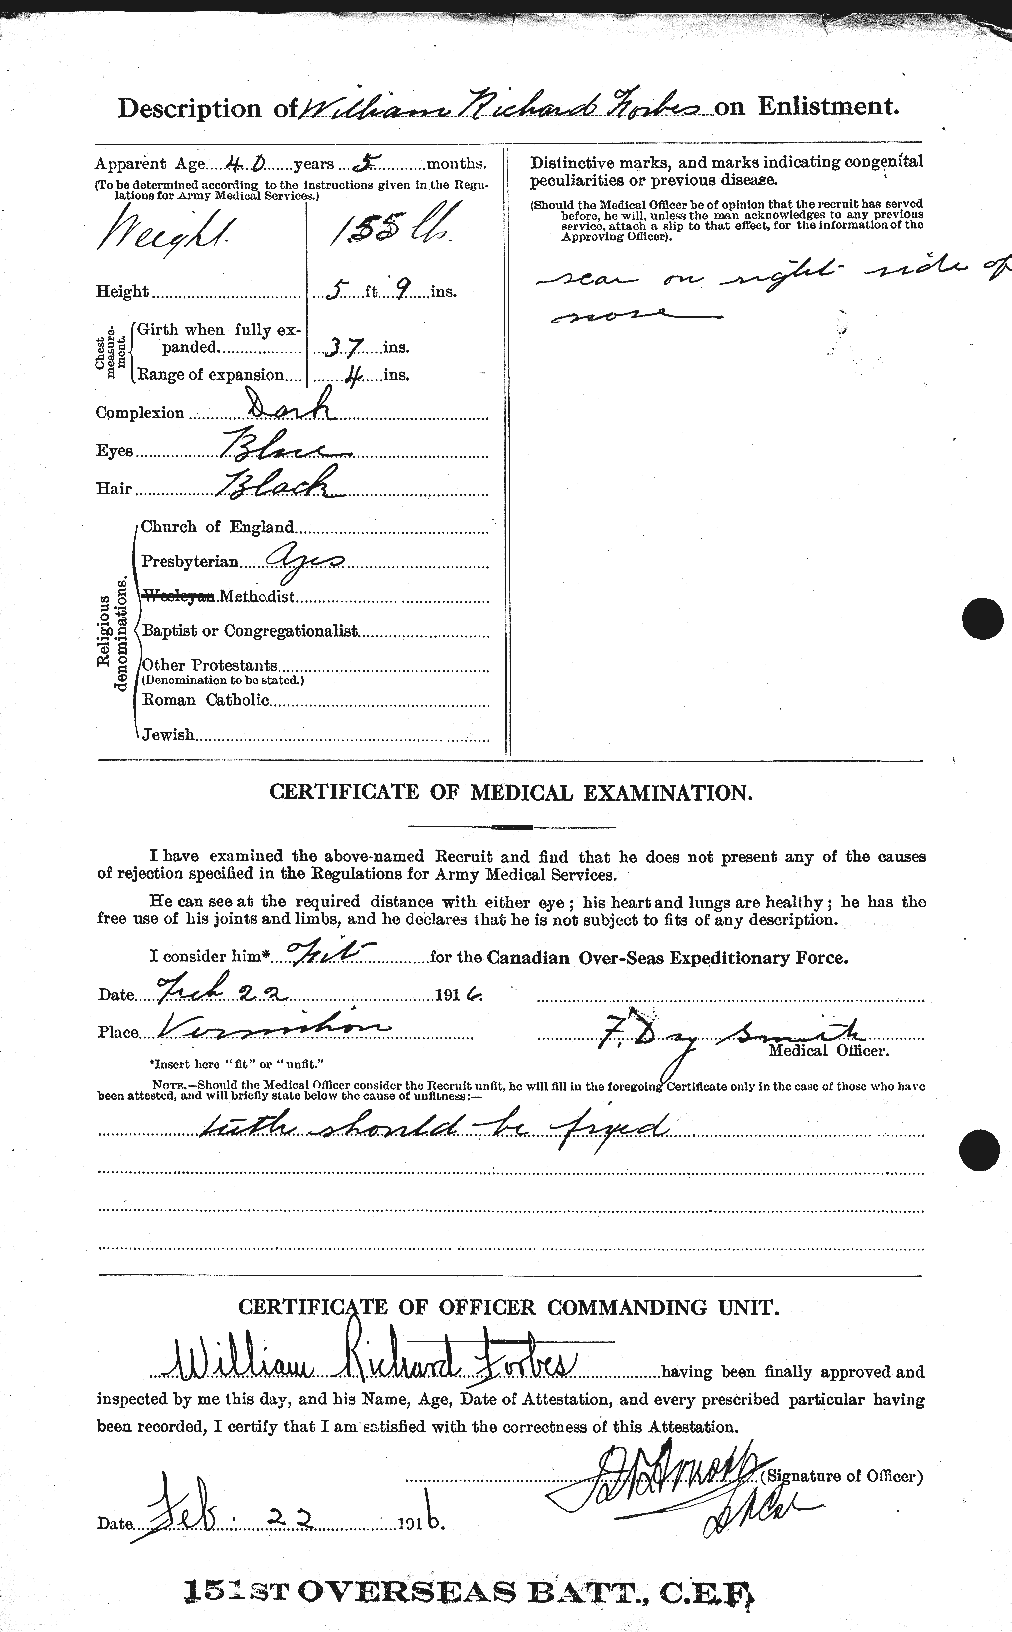 Dossiers du Personnel de la Première Guerre mondiale - CEC 331837b